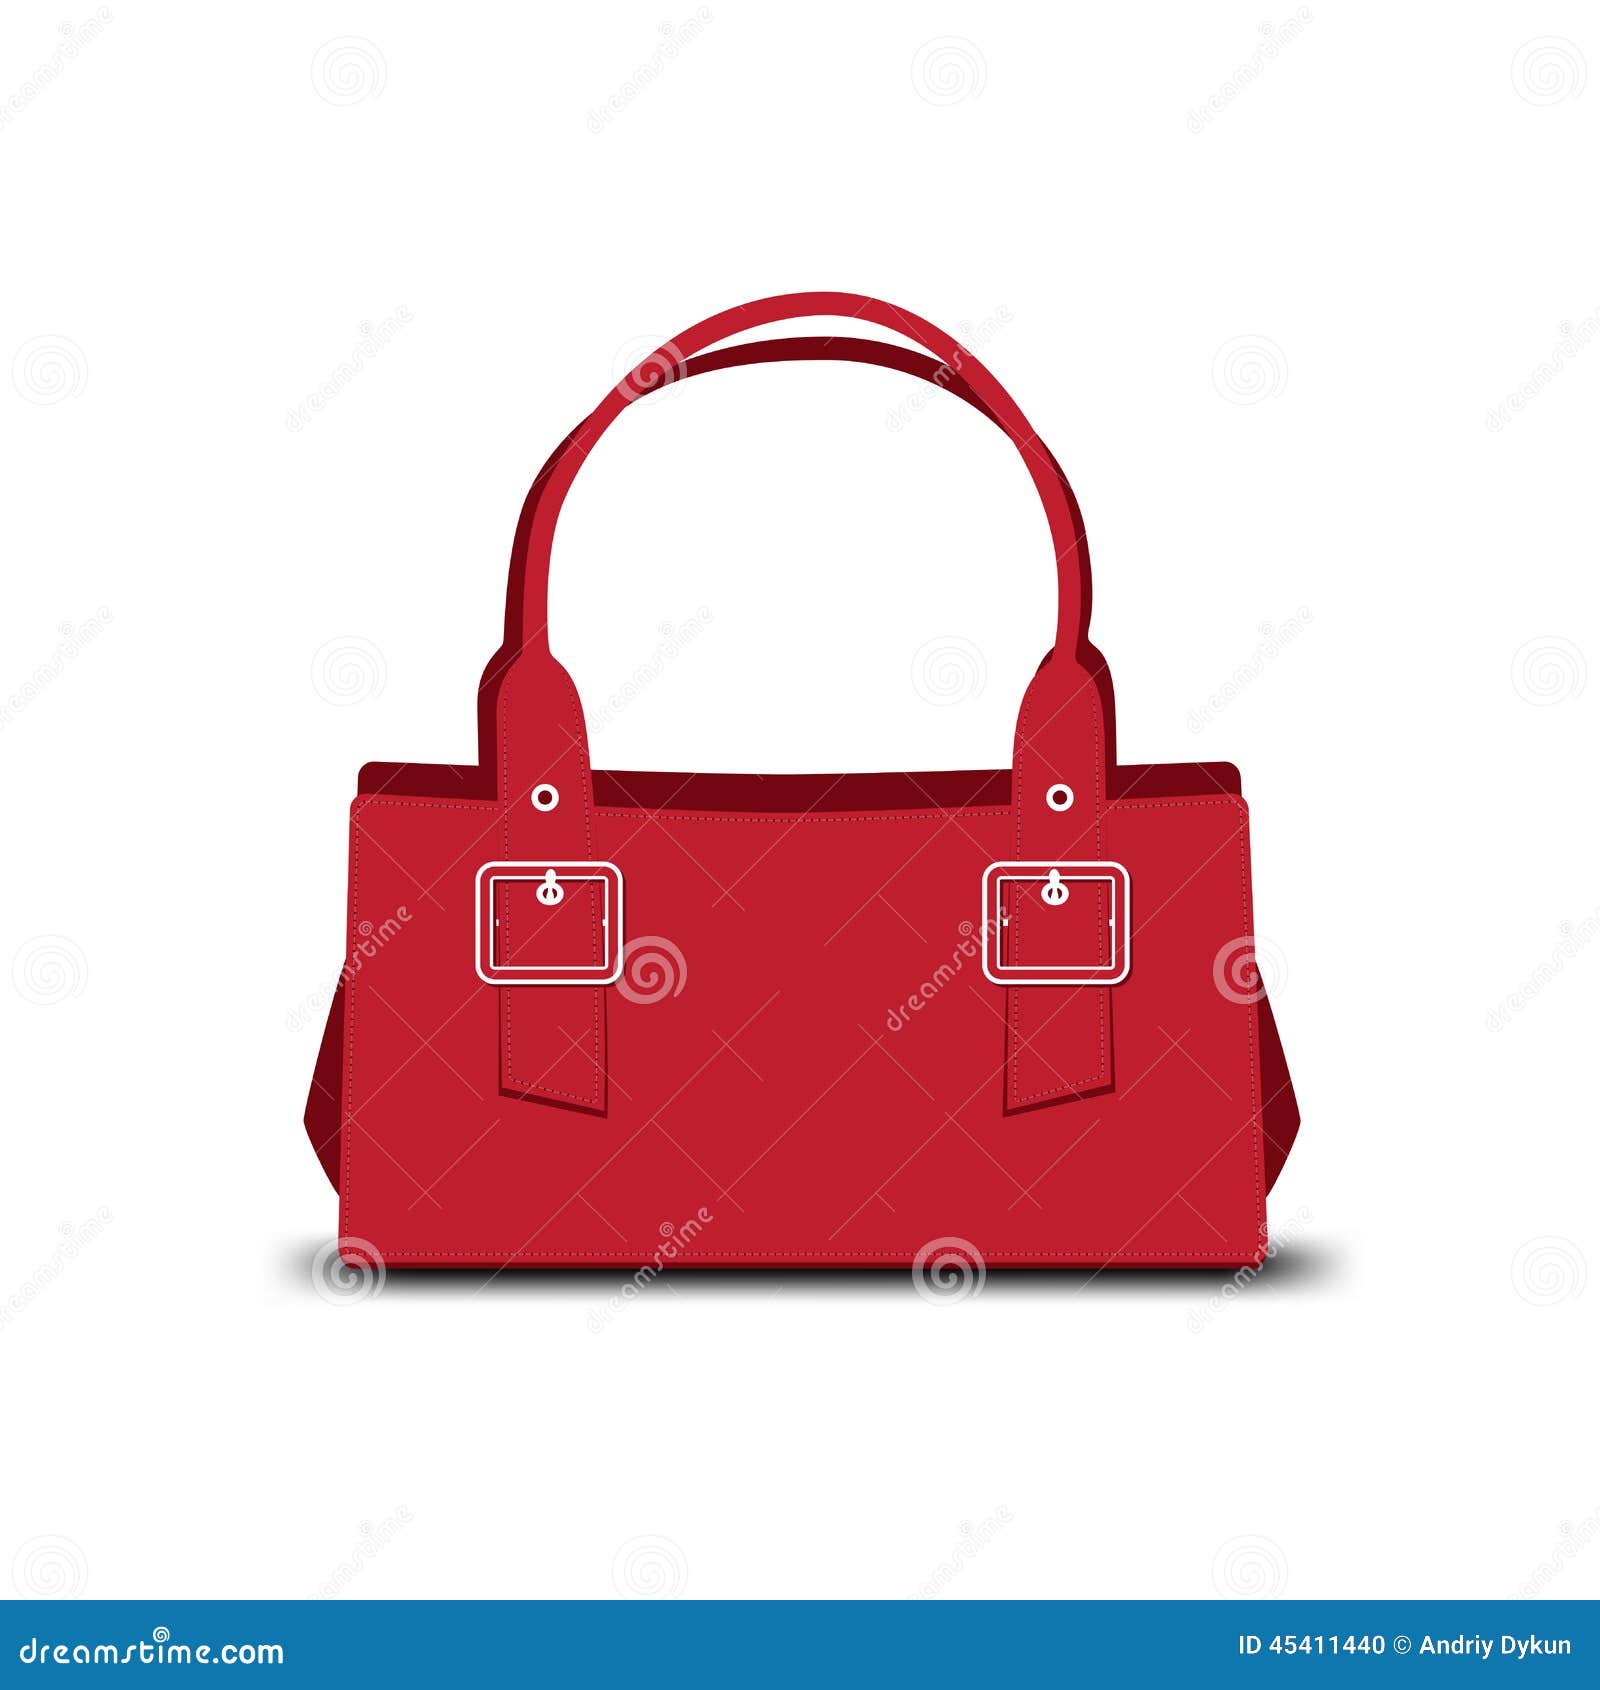 red handbag